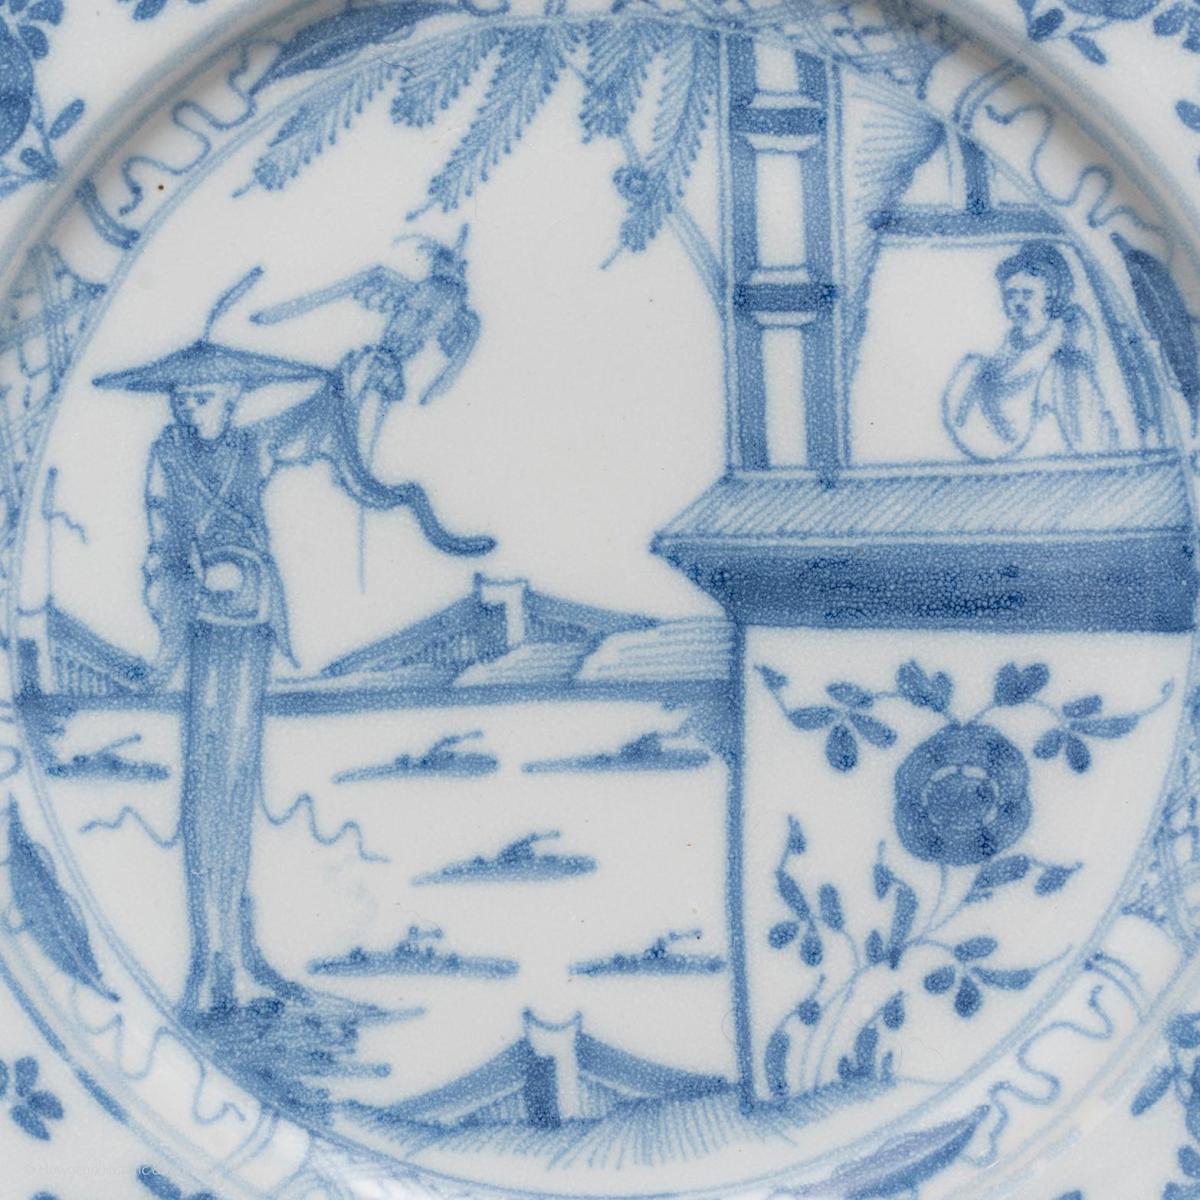 Liverpool Delftware Plates, circa 1760